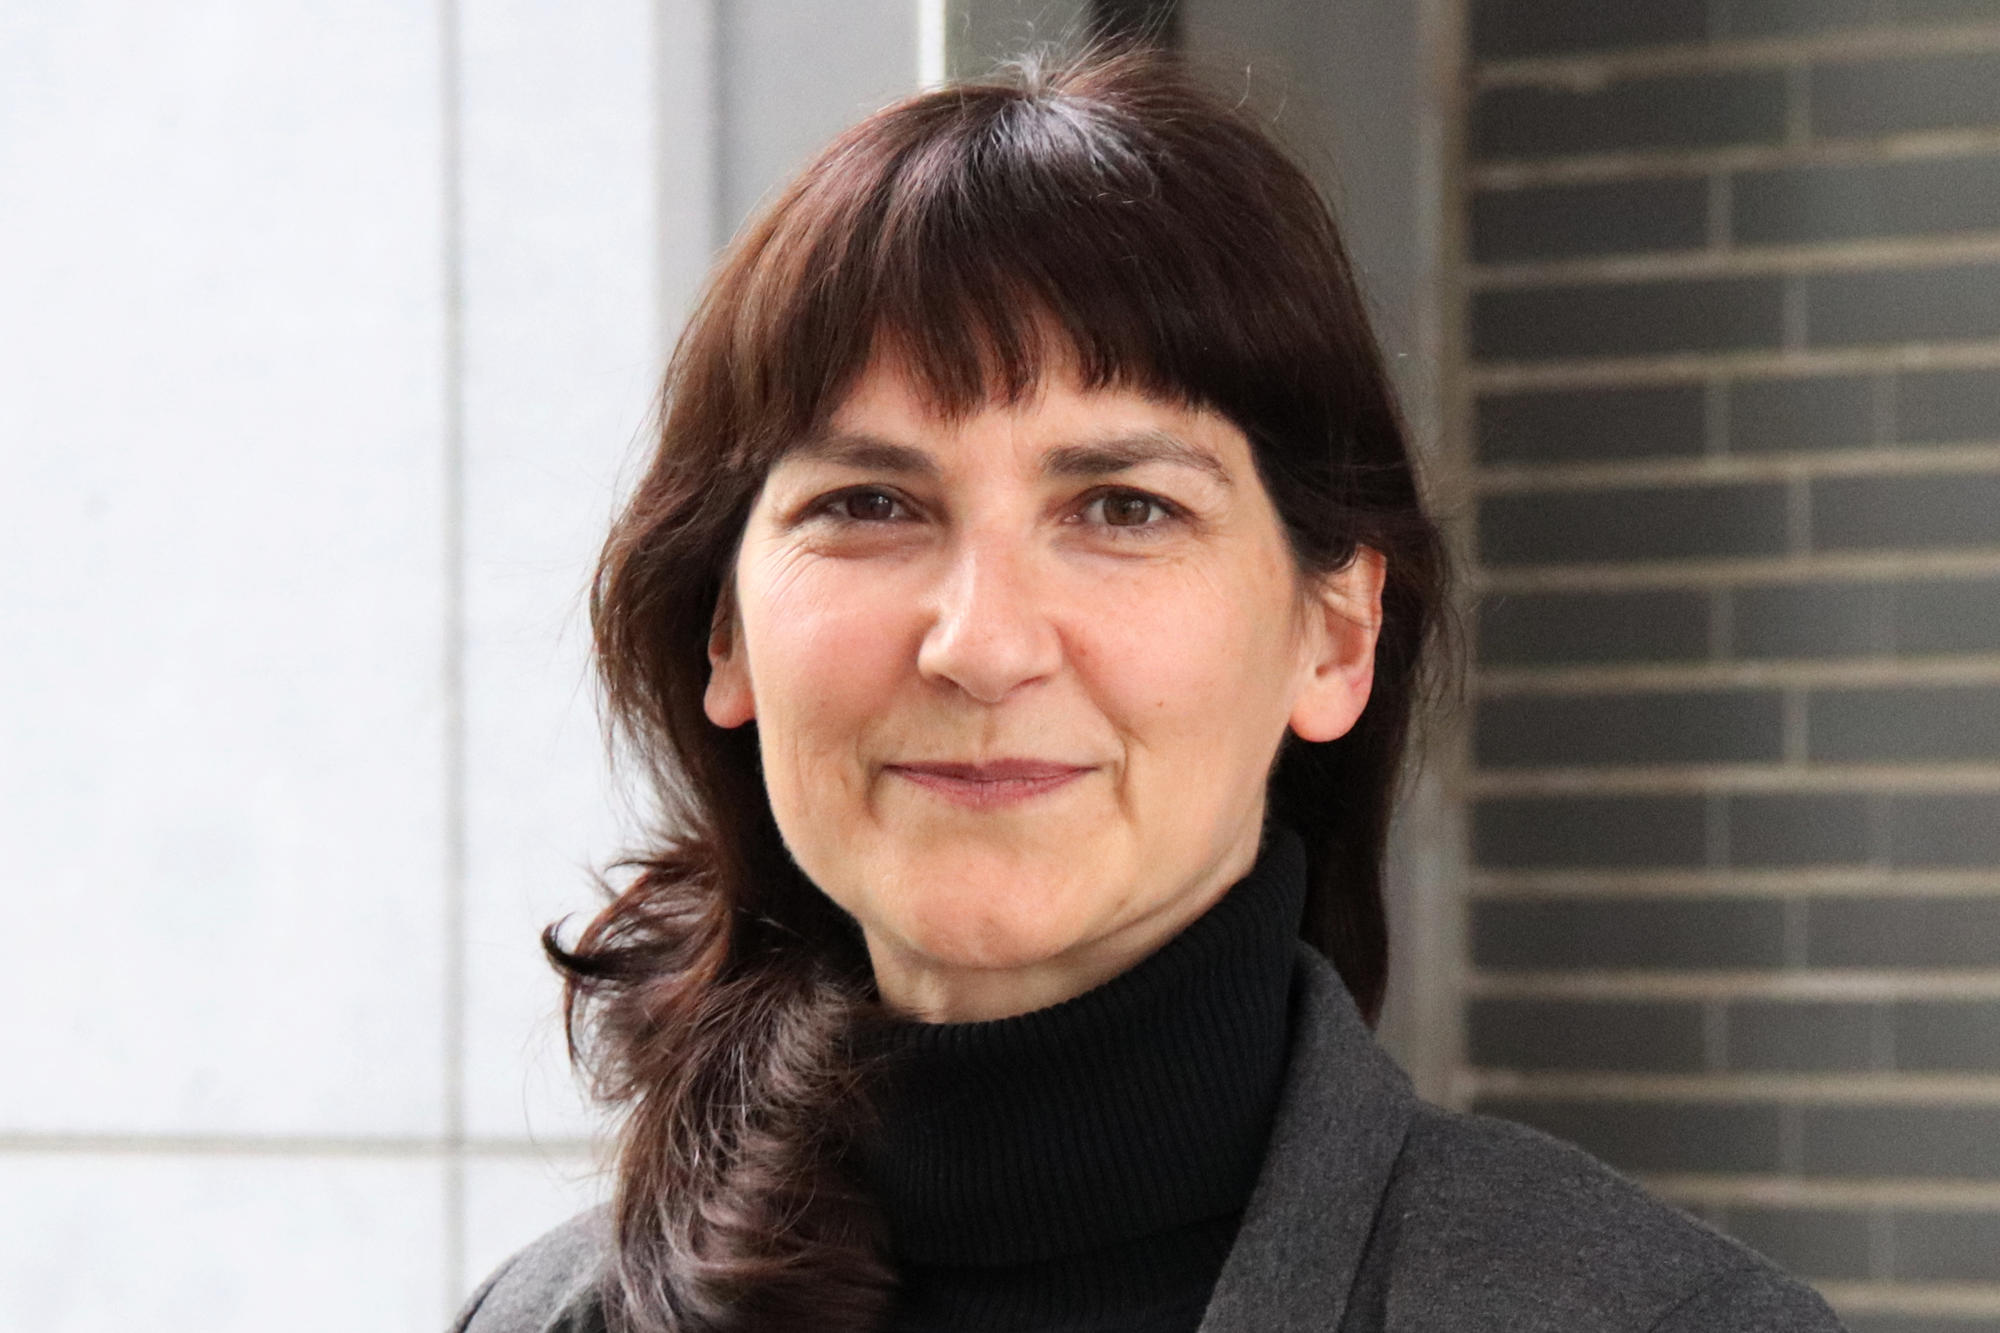 Dr. Nicole Bornheim-Gallmeister